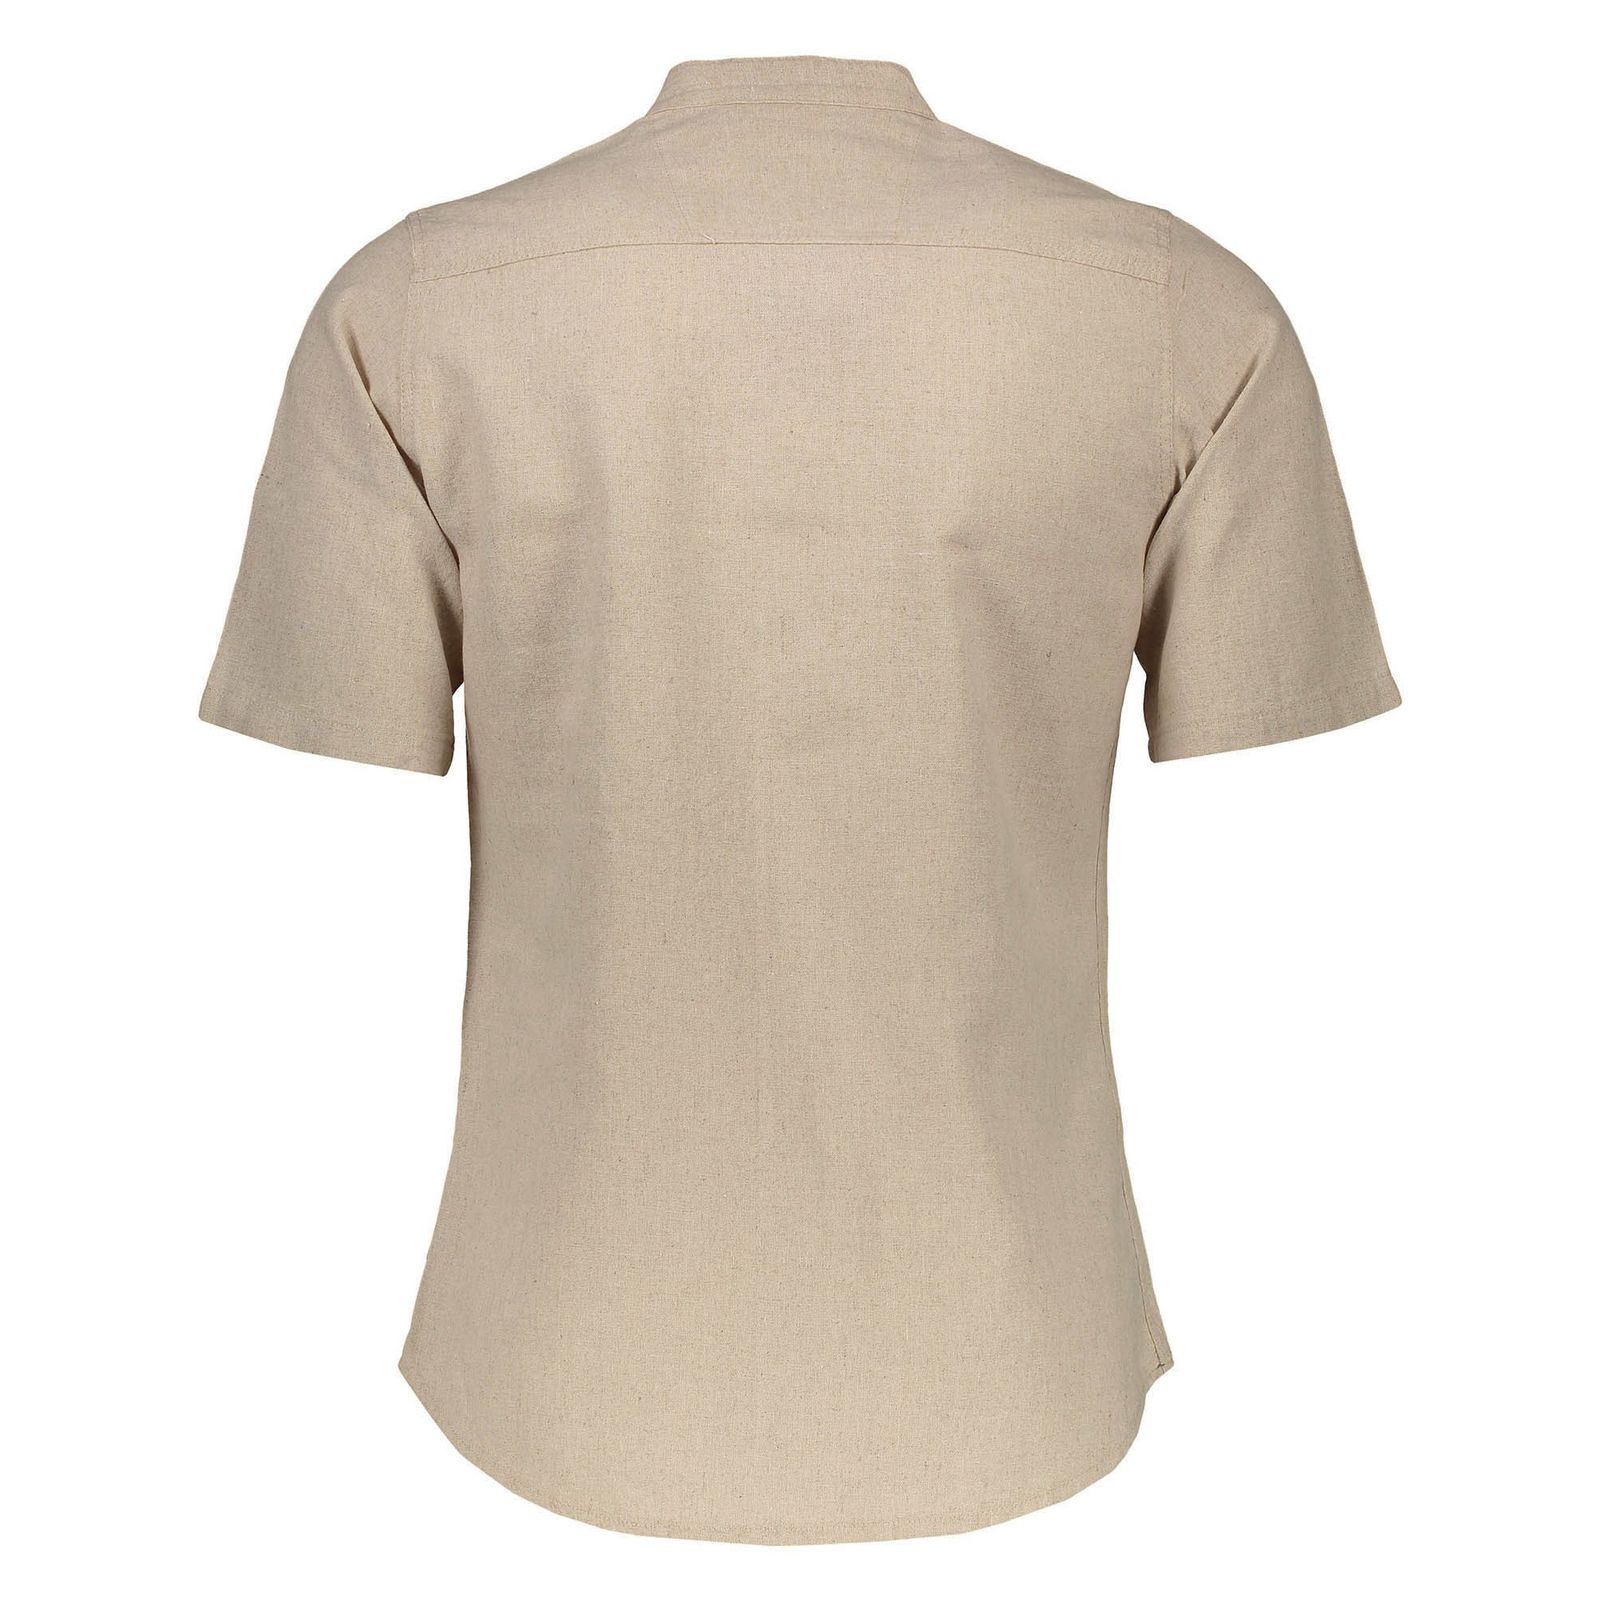 پیراهن آستین کوتاه مردانه مدل بزرگمهر - تن درست - کرم - 3